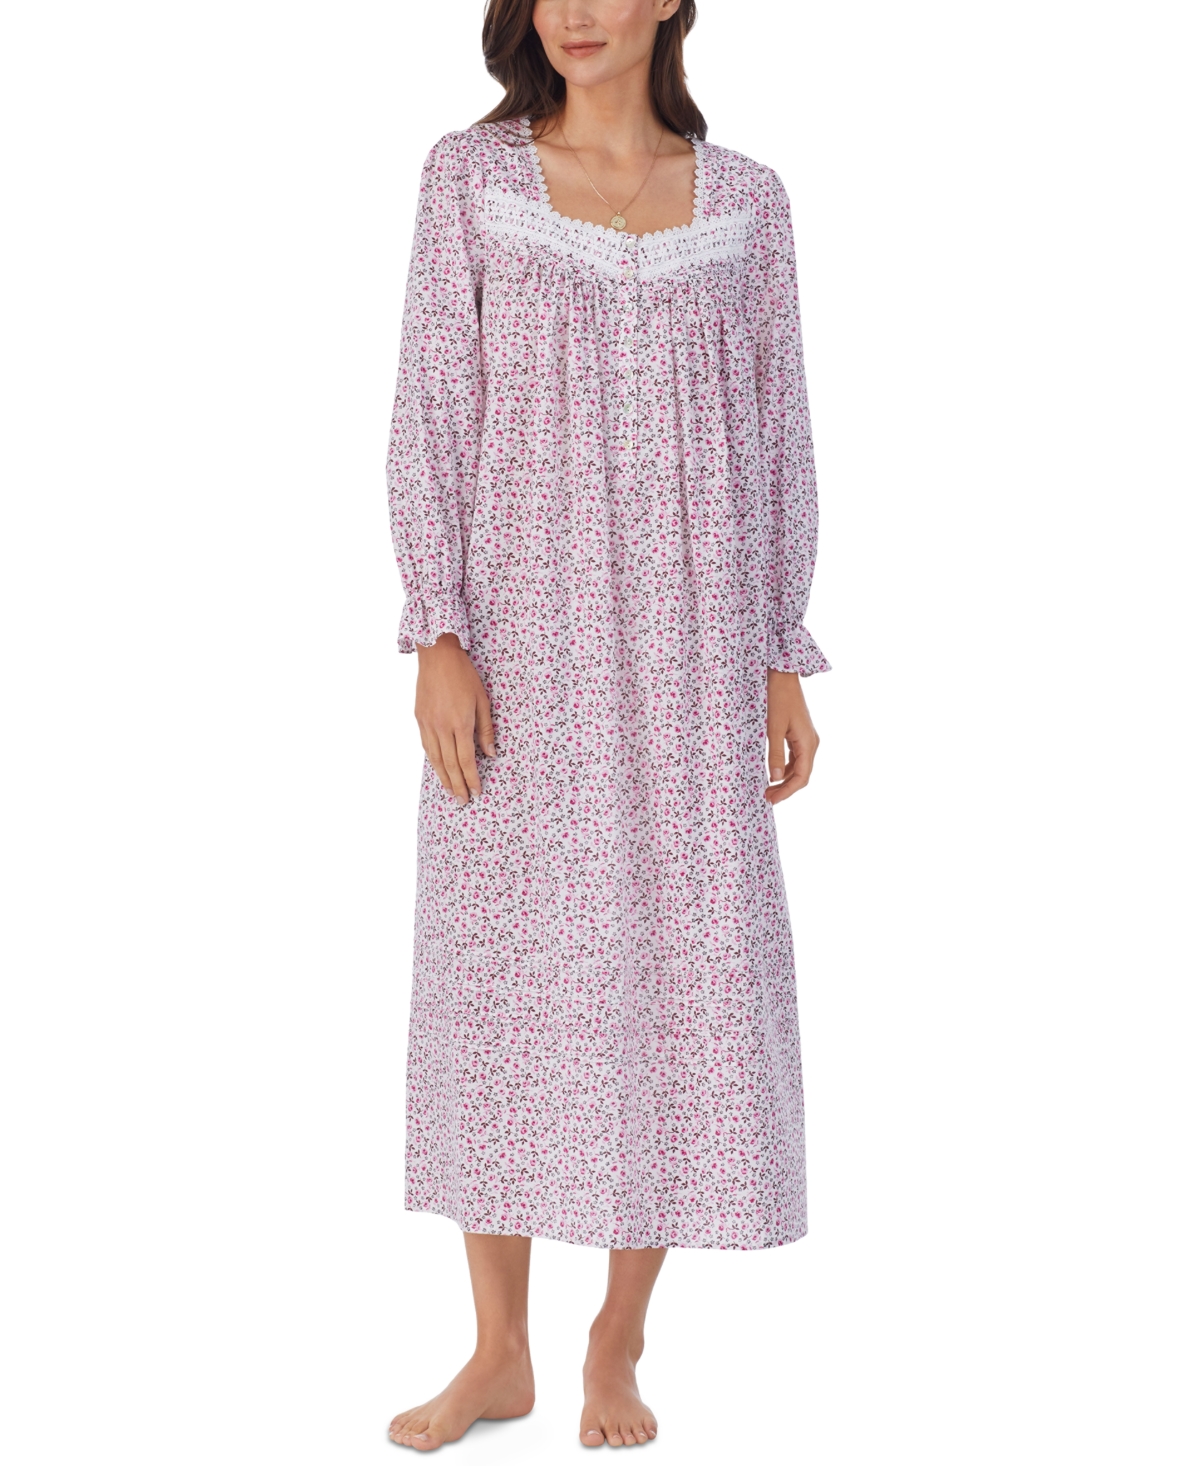 Edwardian Nightgown, Pajamas History